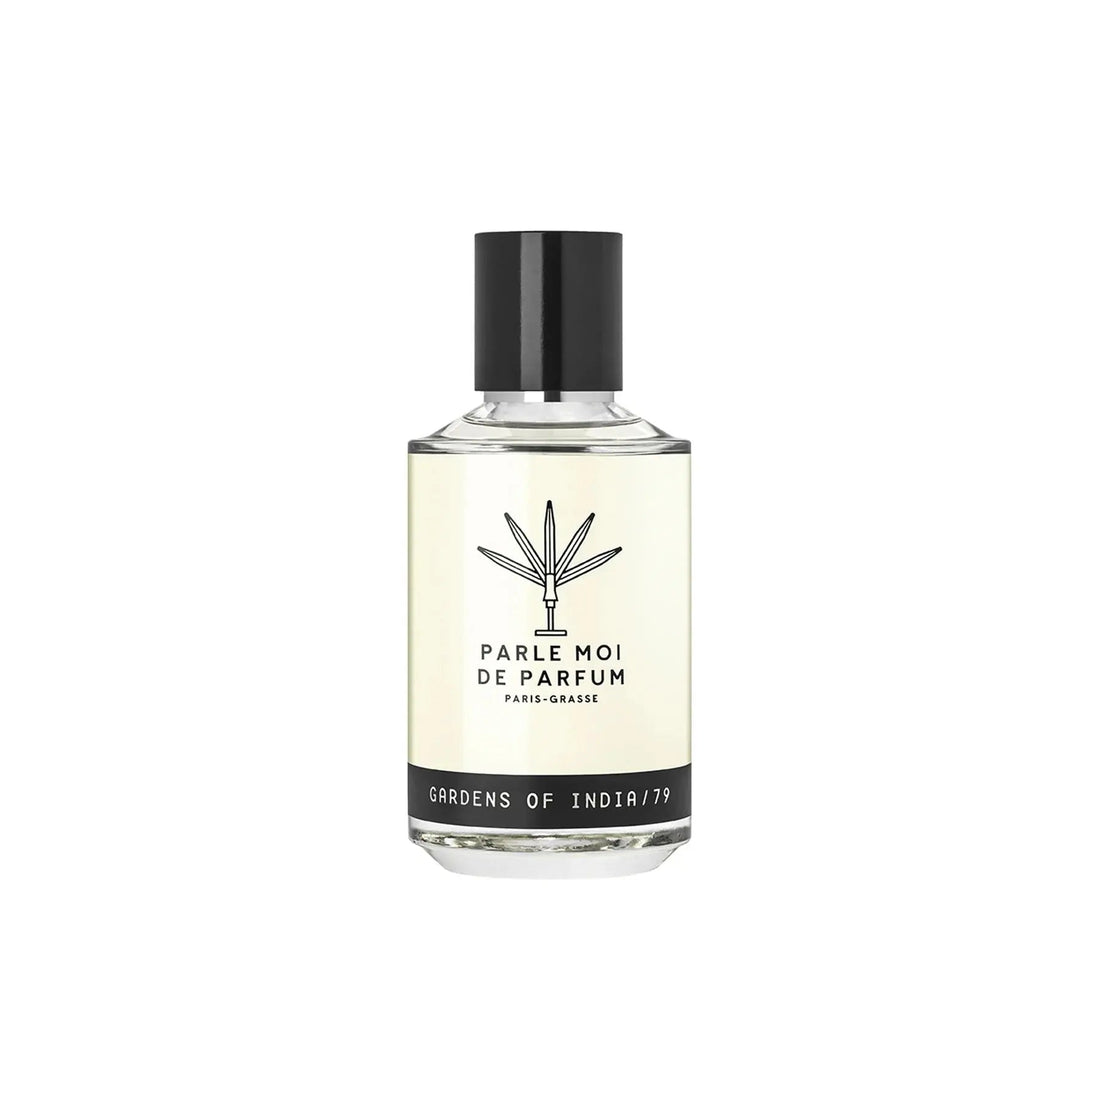 Gardens of India \/79 Parle Moi de Parfum – 100 ml